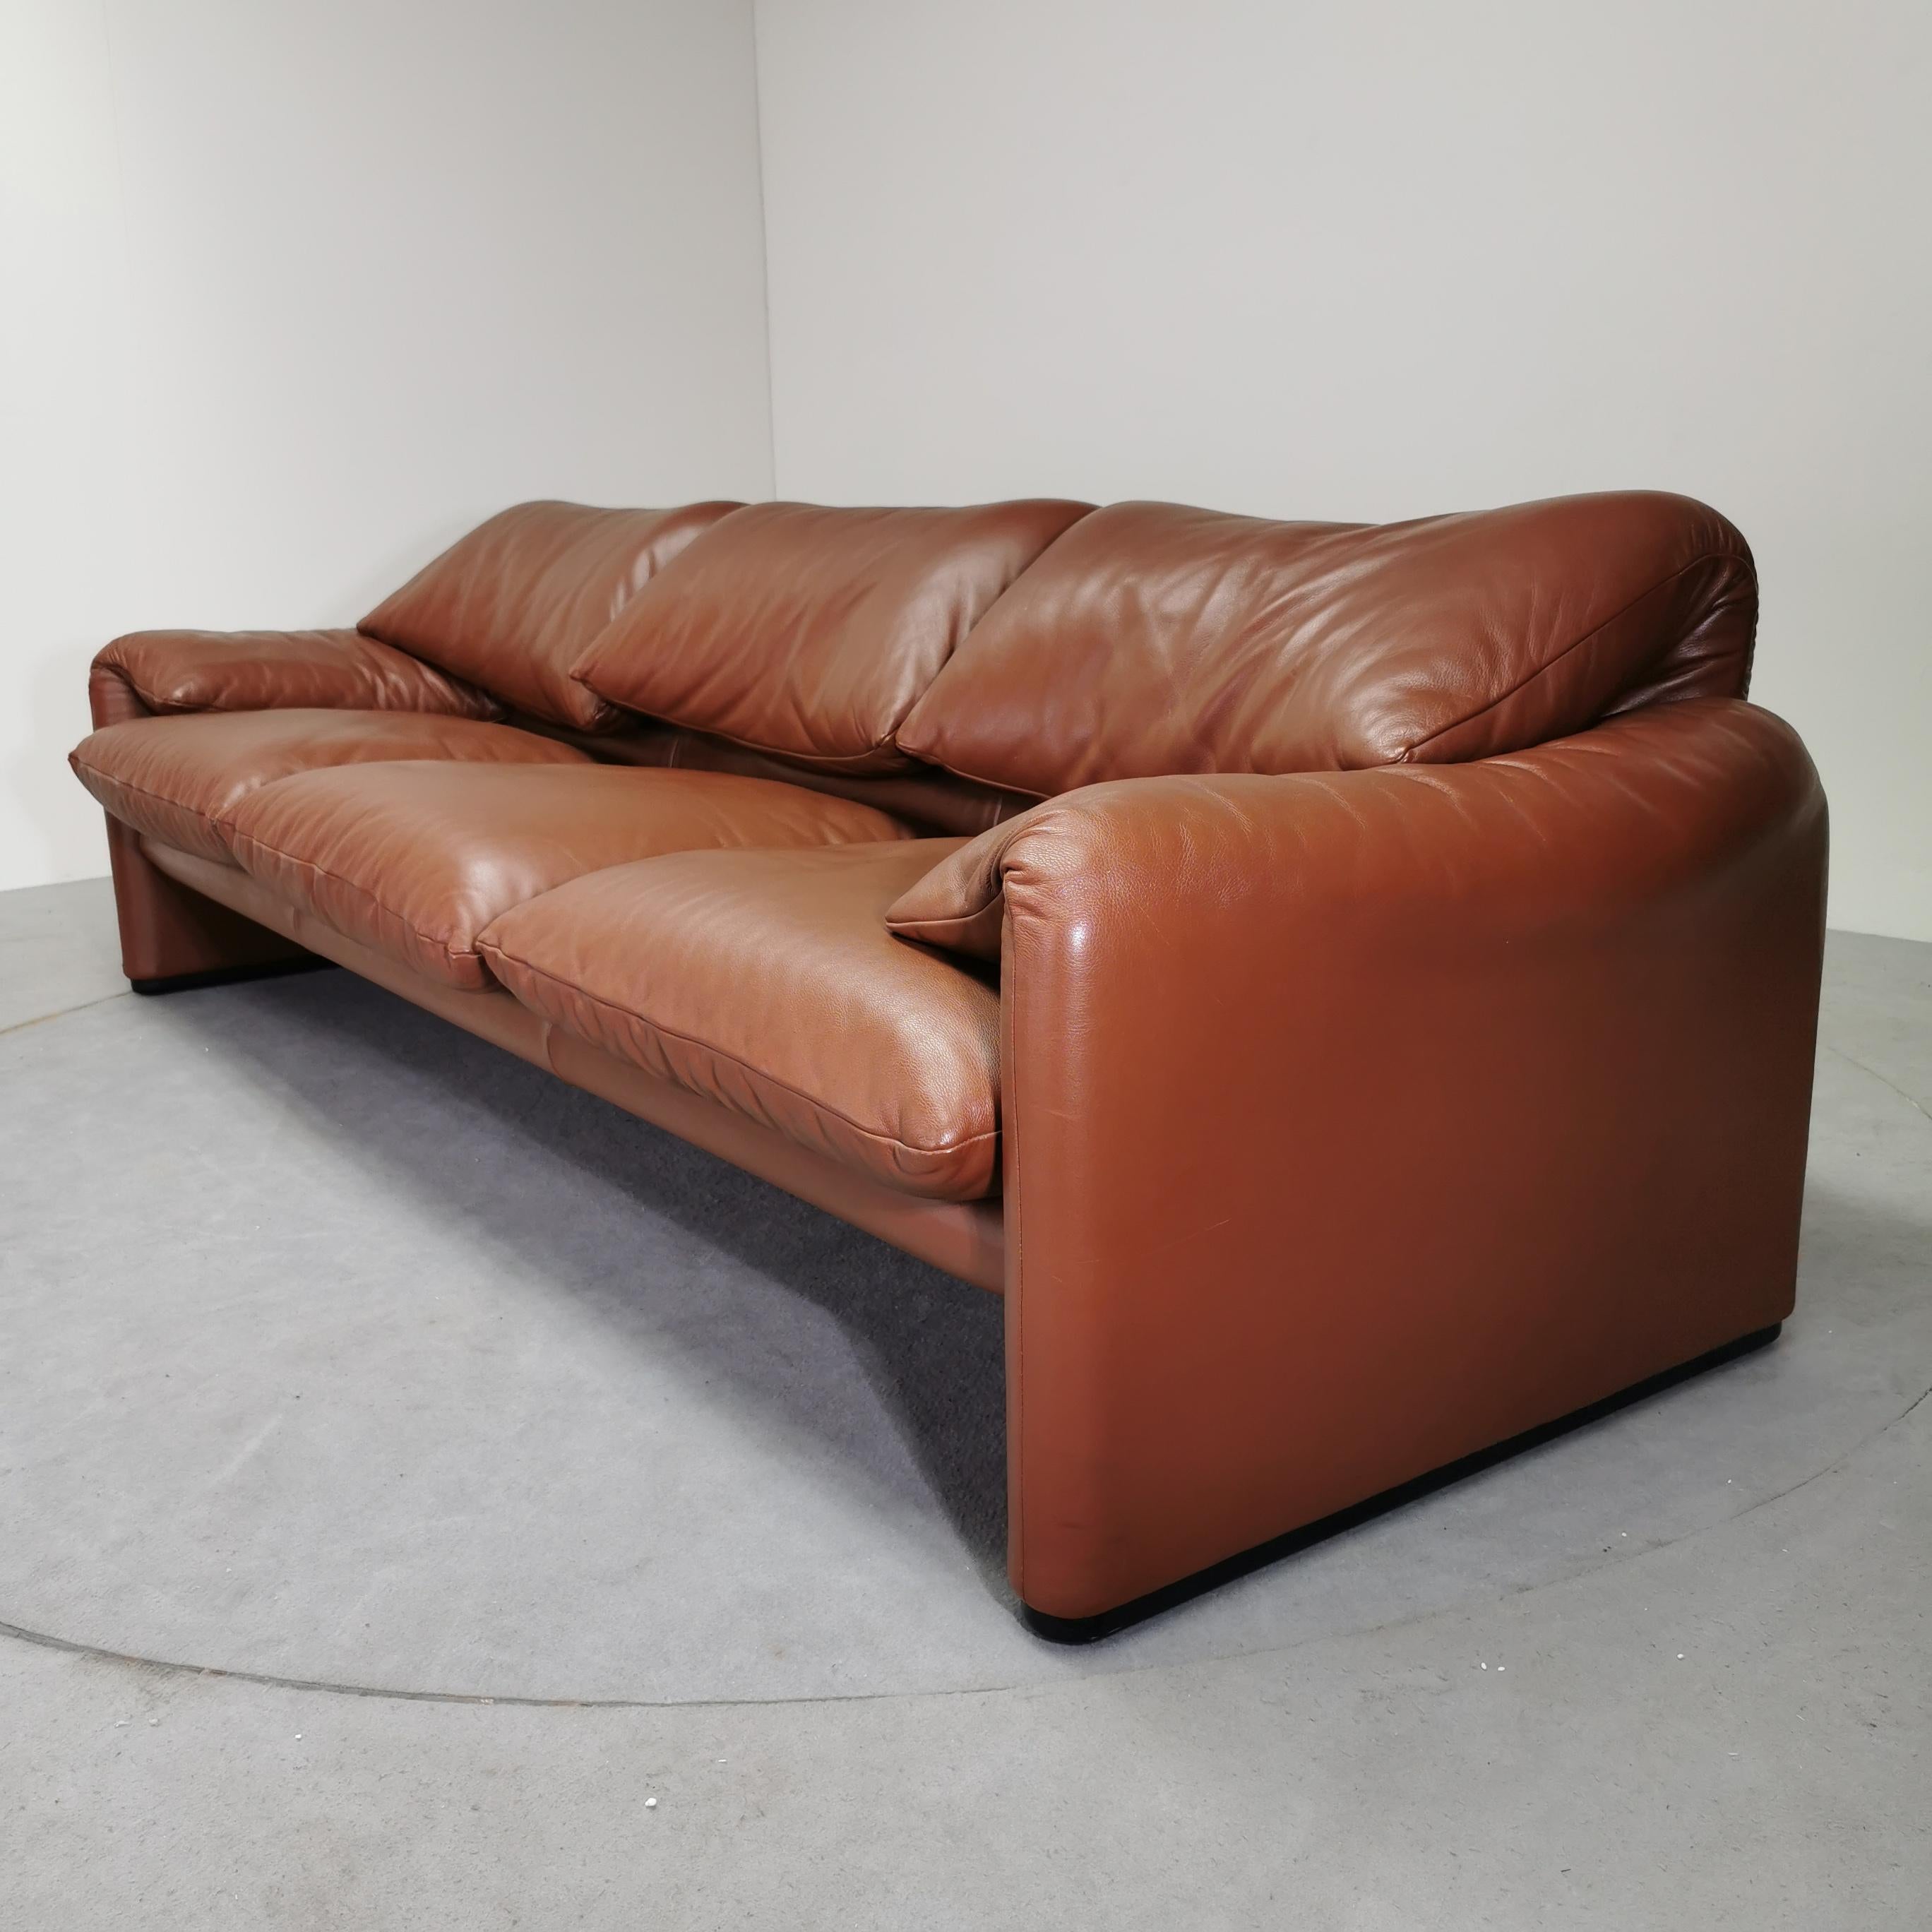 Il divano Maralunga di Cassina, disegnato da Vico Magistretti, è ormai un simbolo nella collezione del design Cassina
Vincitore del Compasso d’Oro nel 1979, Maralunga è la materializzazione dell’idea stessa di comfort, grazie alla variazione del